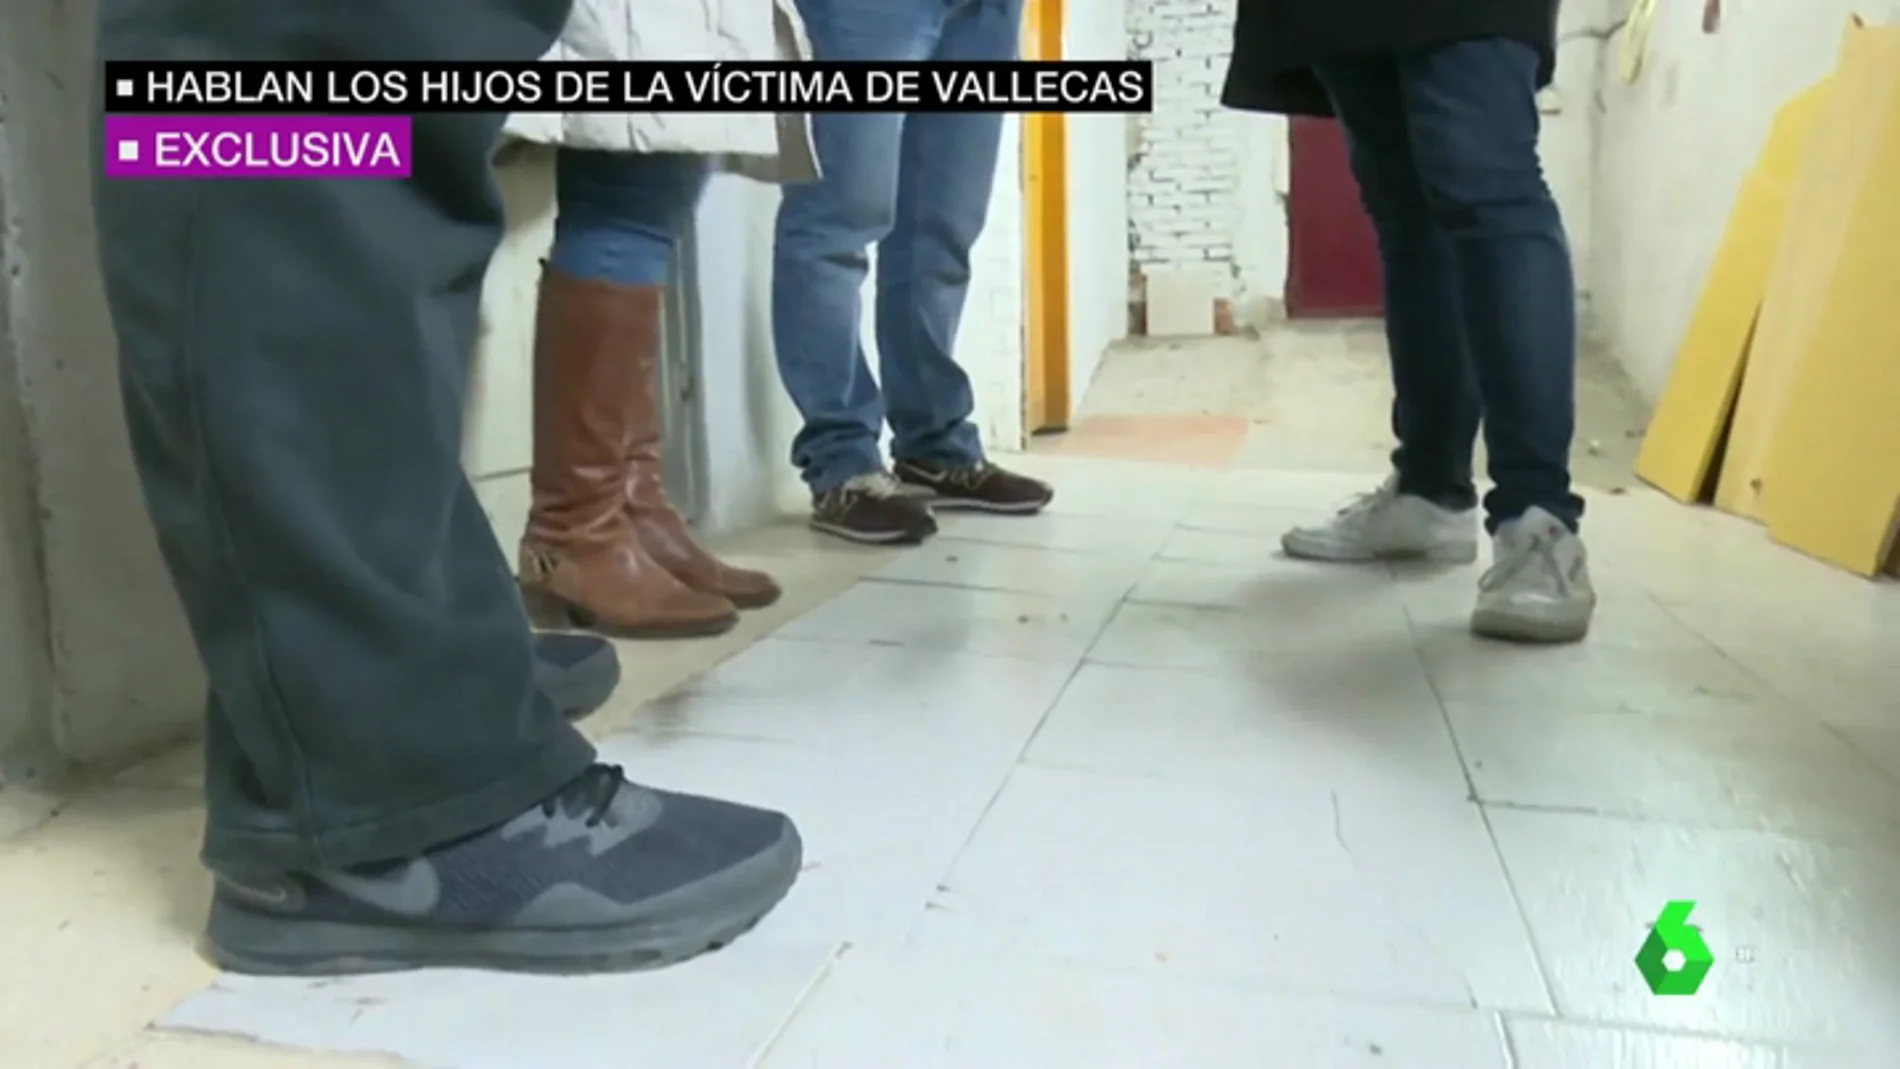 El testimonio de los hijos del hombre apuñalado en Vallecas: "Mi padre me ha dado dos veces la vida"